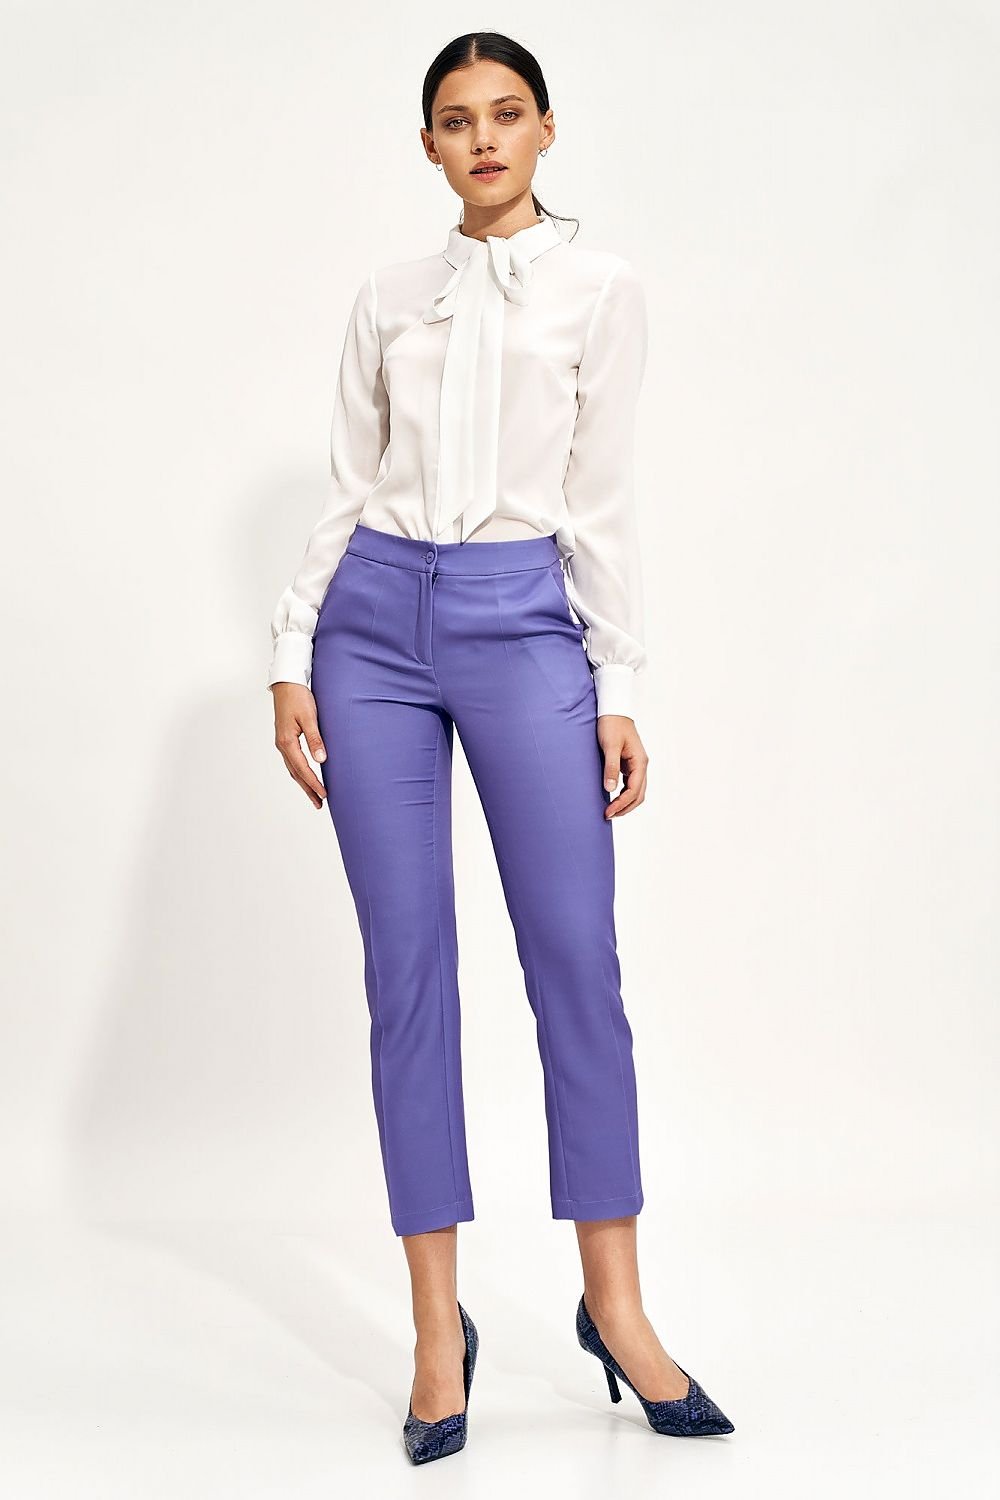 Women trousers model 171286 Nife